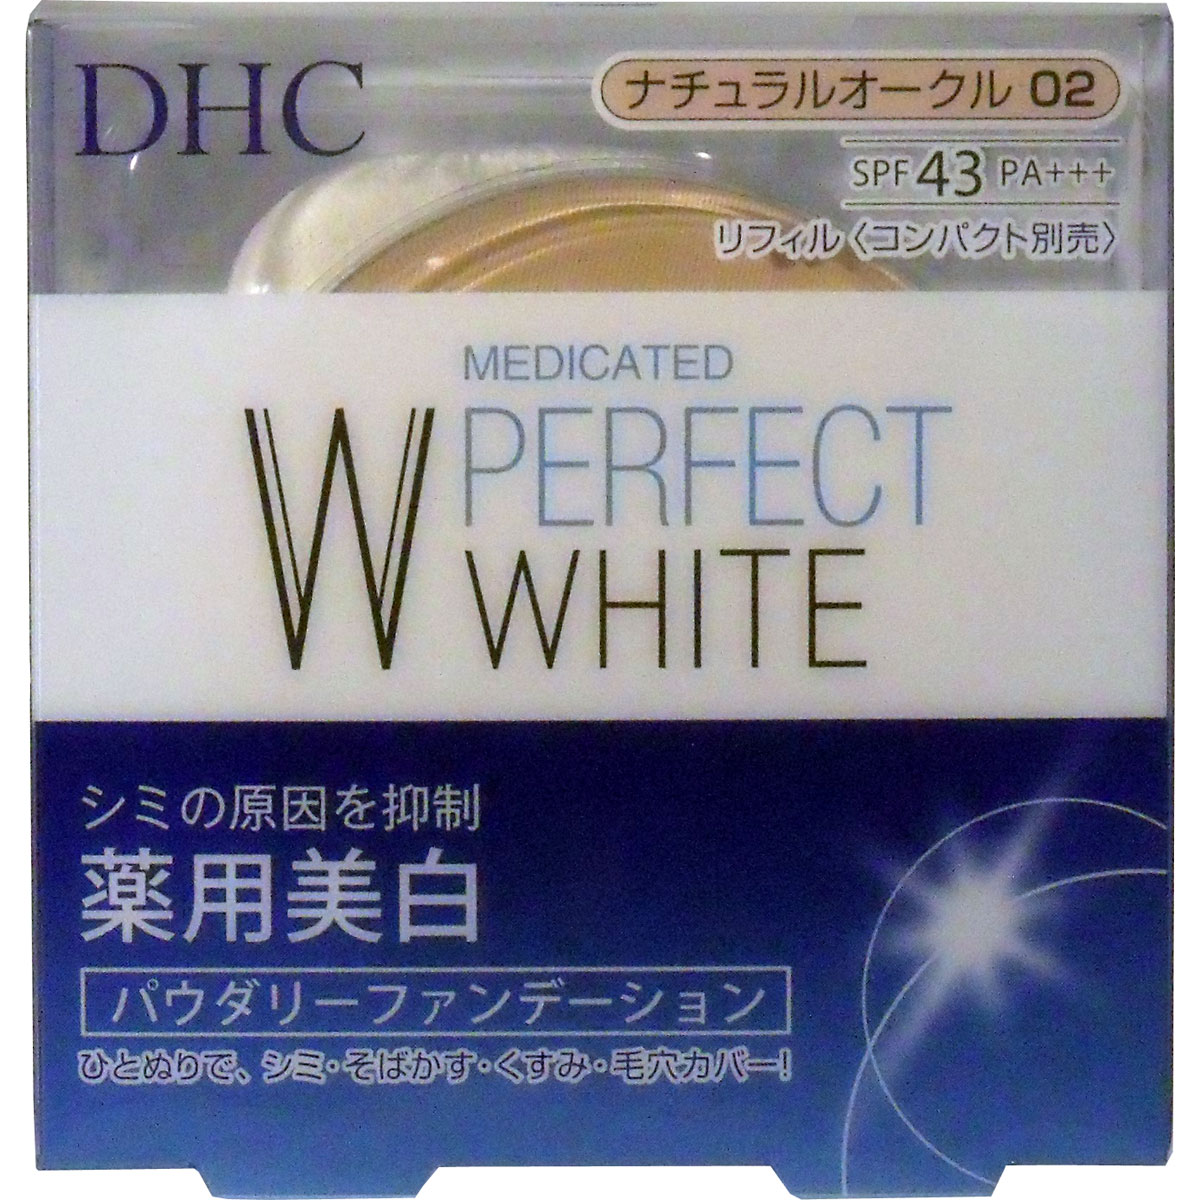 DHC 薬用美白パーフェクトホワイト パウダリーファンデーション ナチュラルオークル02 10g